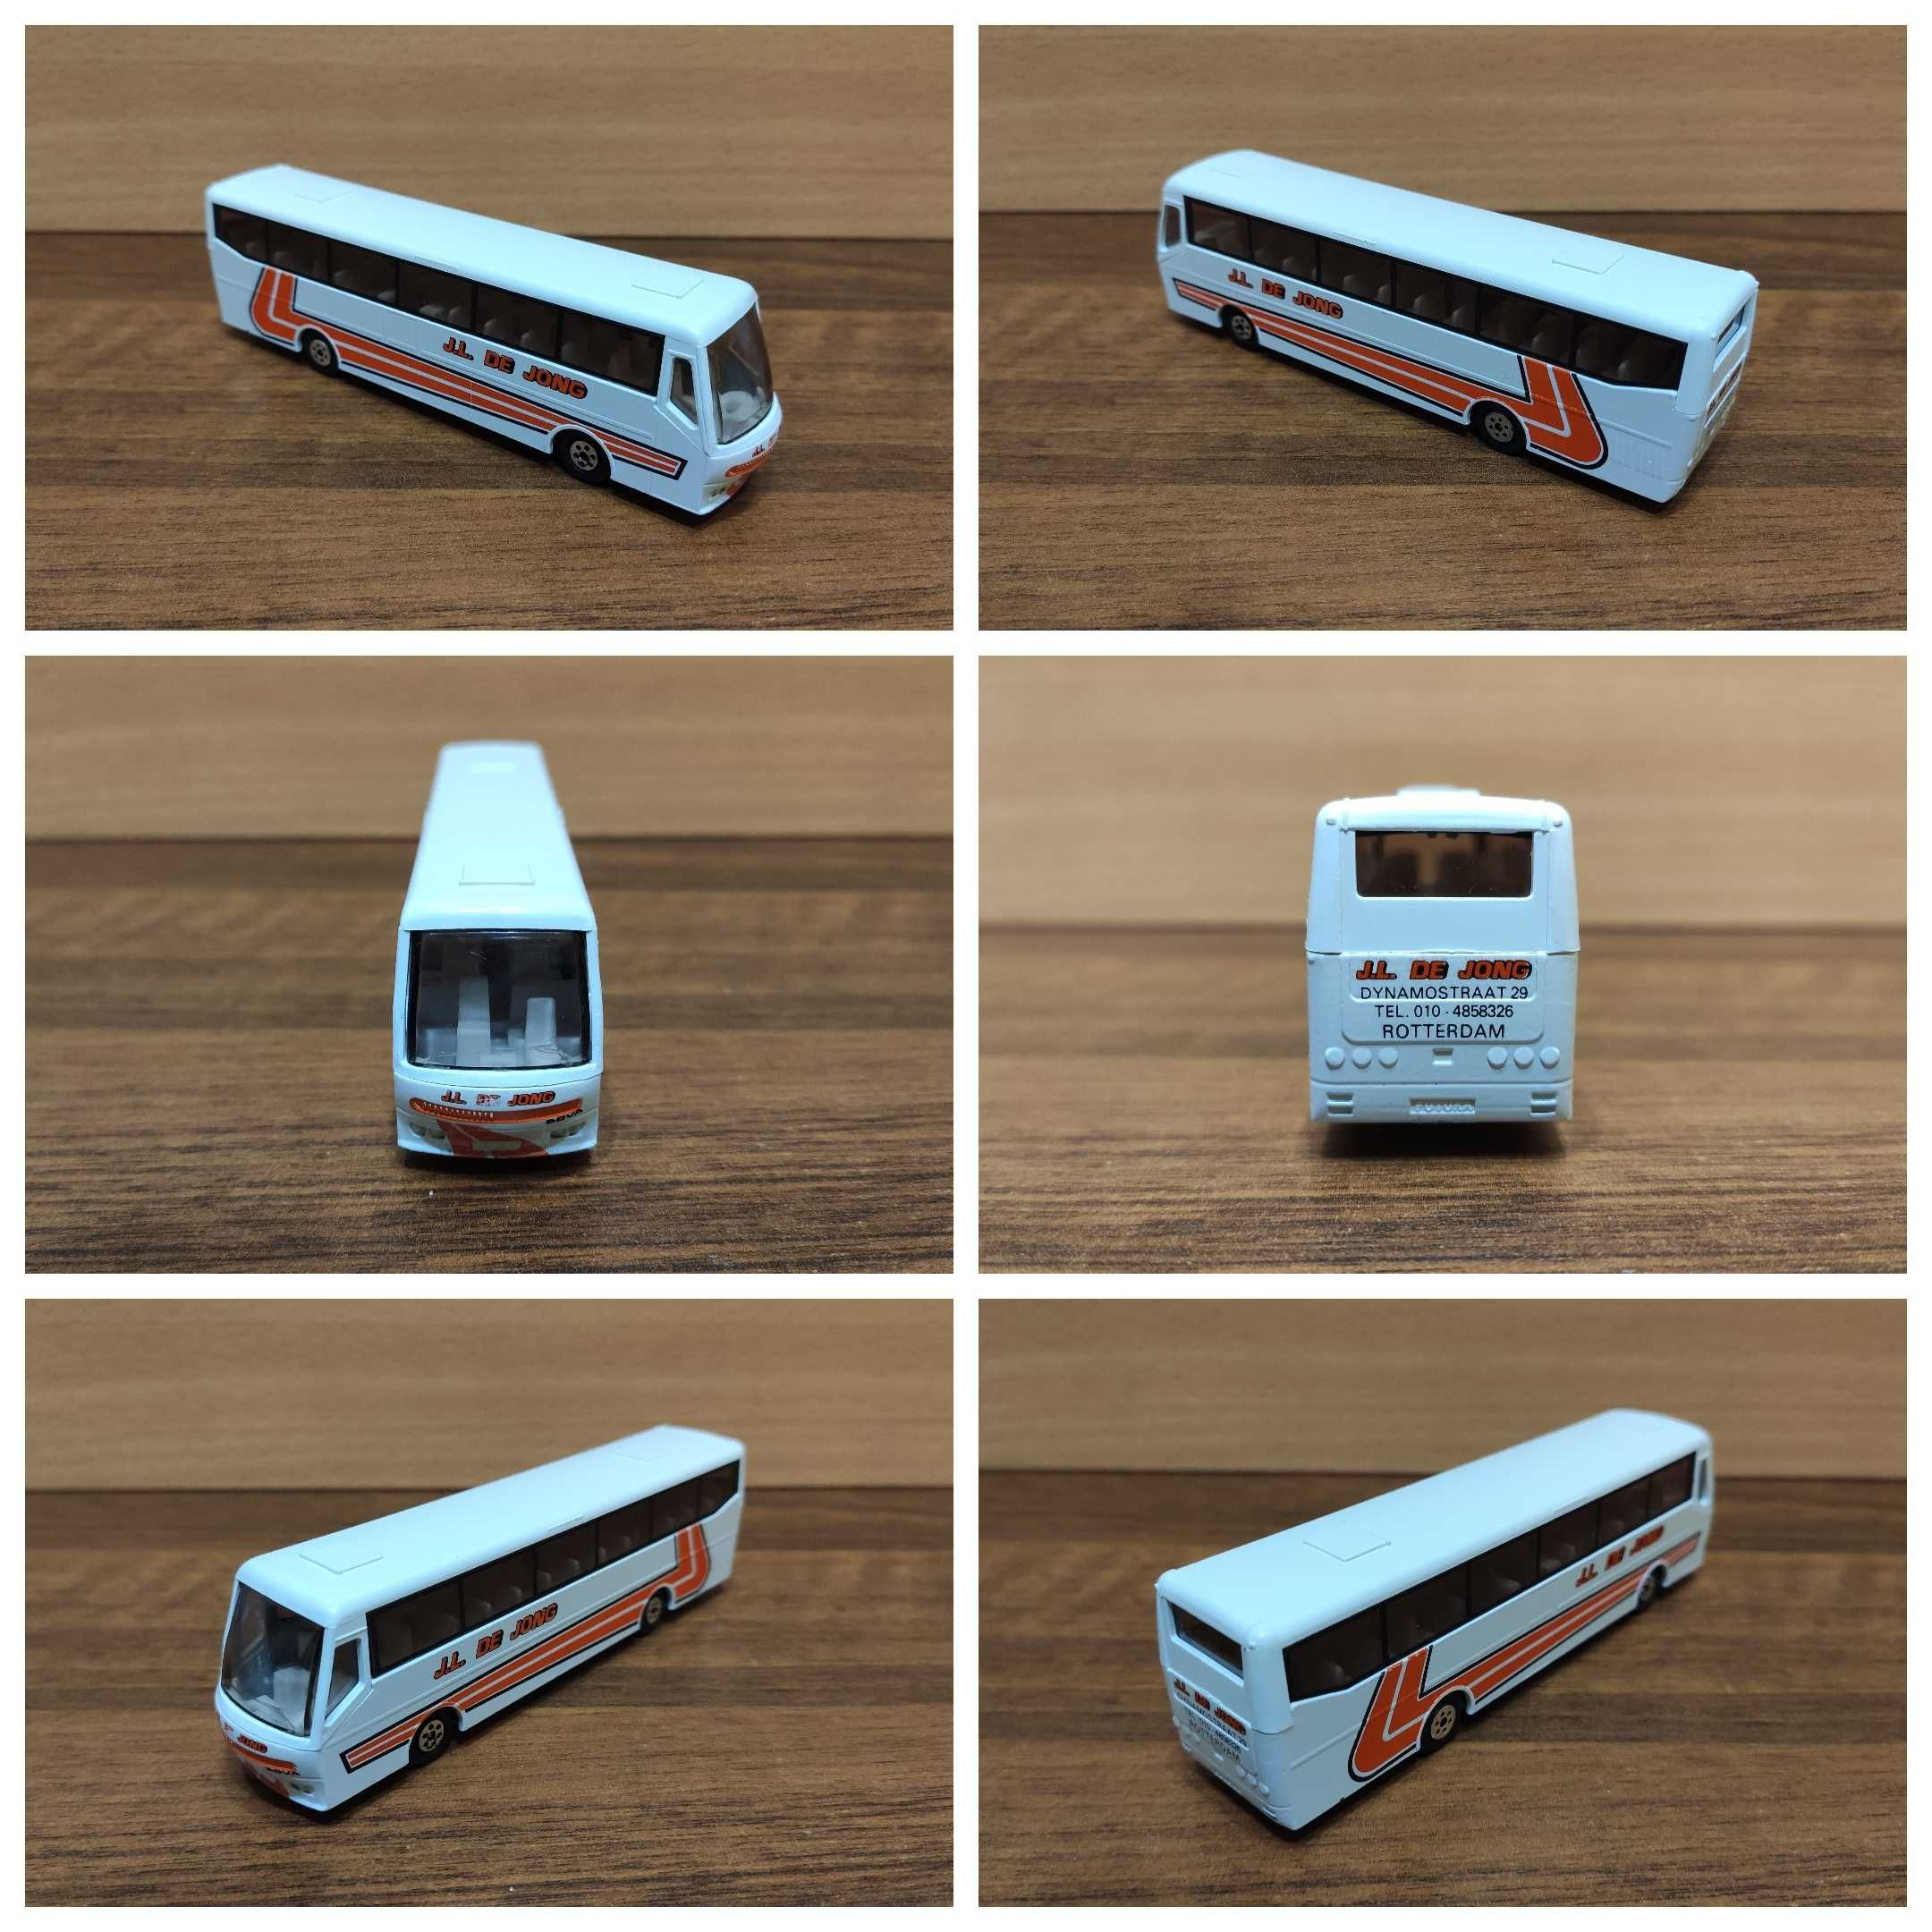 Model autobusu: BOVA Futura - J.L. De Jong [EFSI Holland]